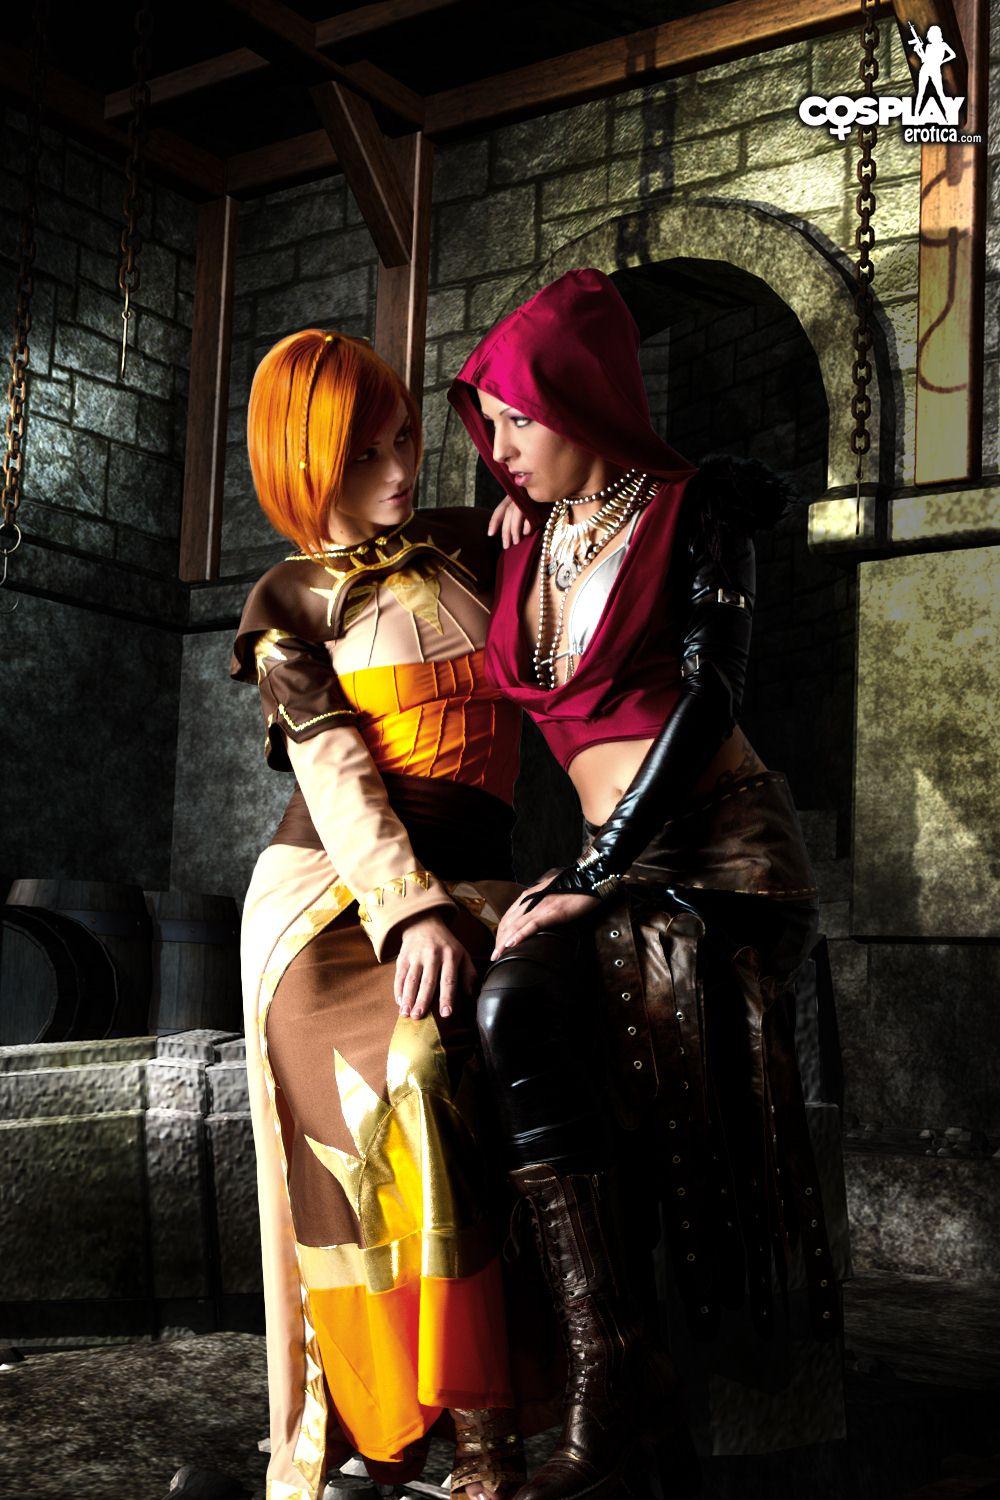 Immagini di nayma e mea facendo un caldo lesbica dragon age cosplay
 #59444416